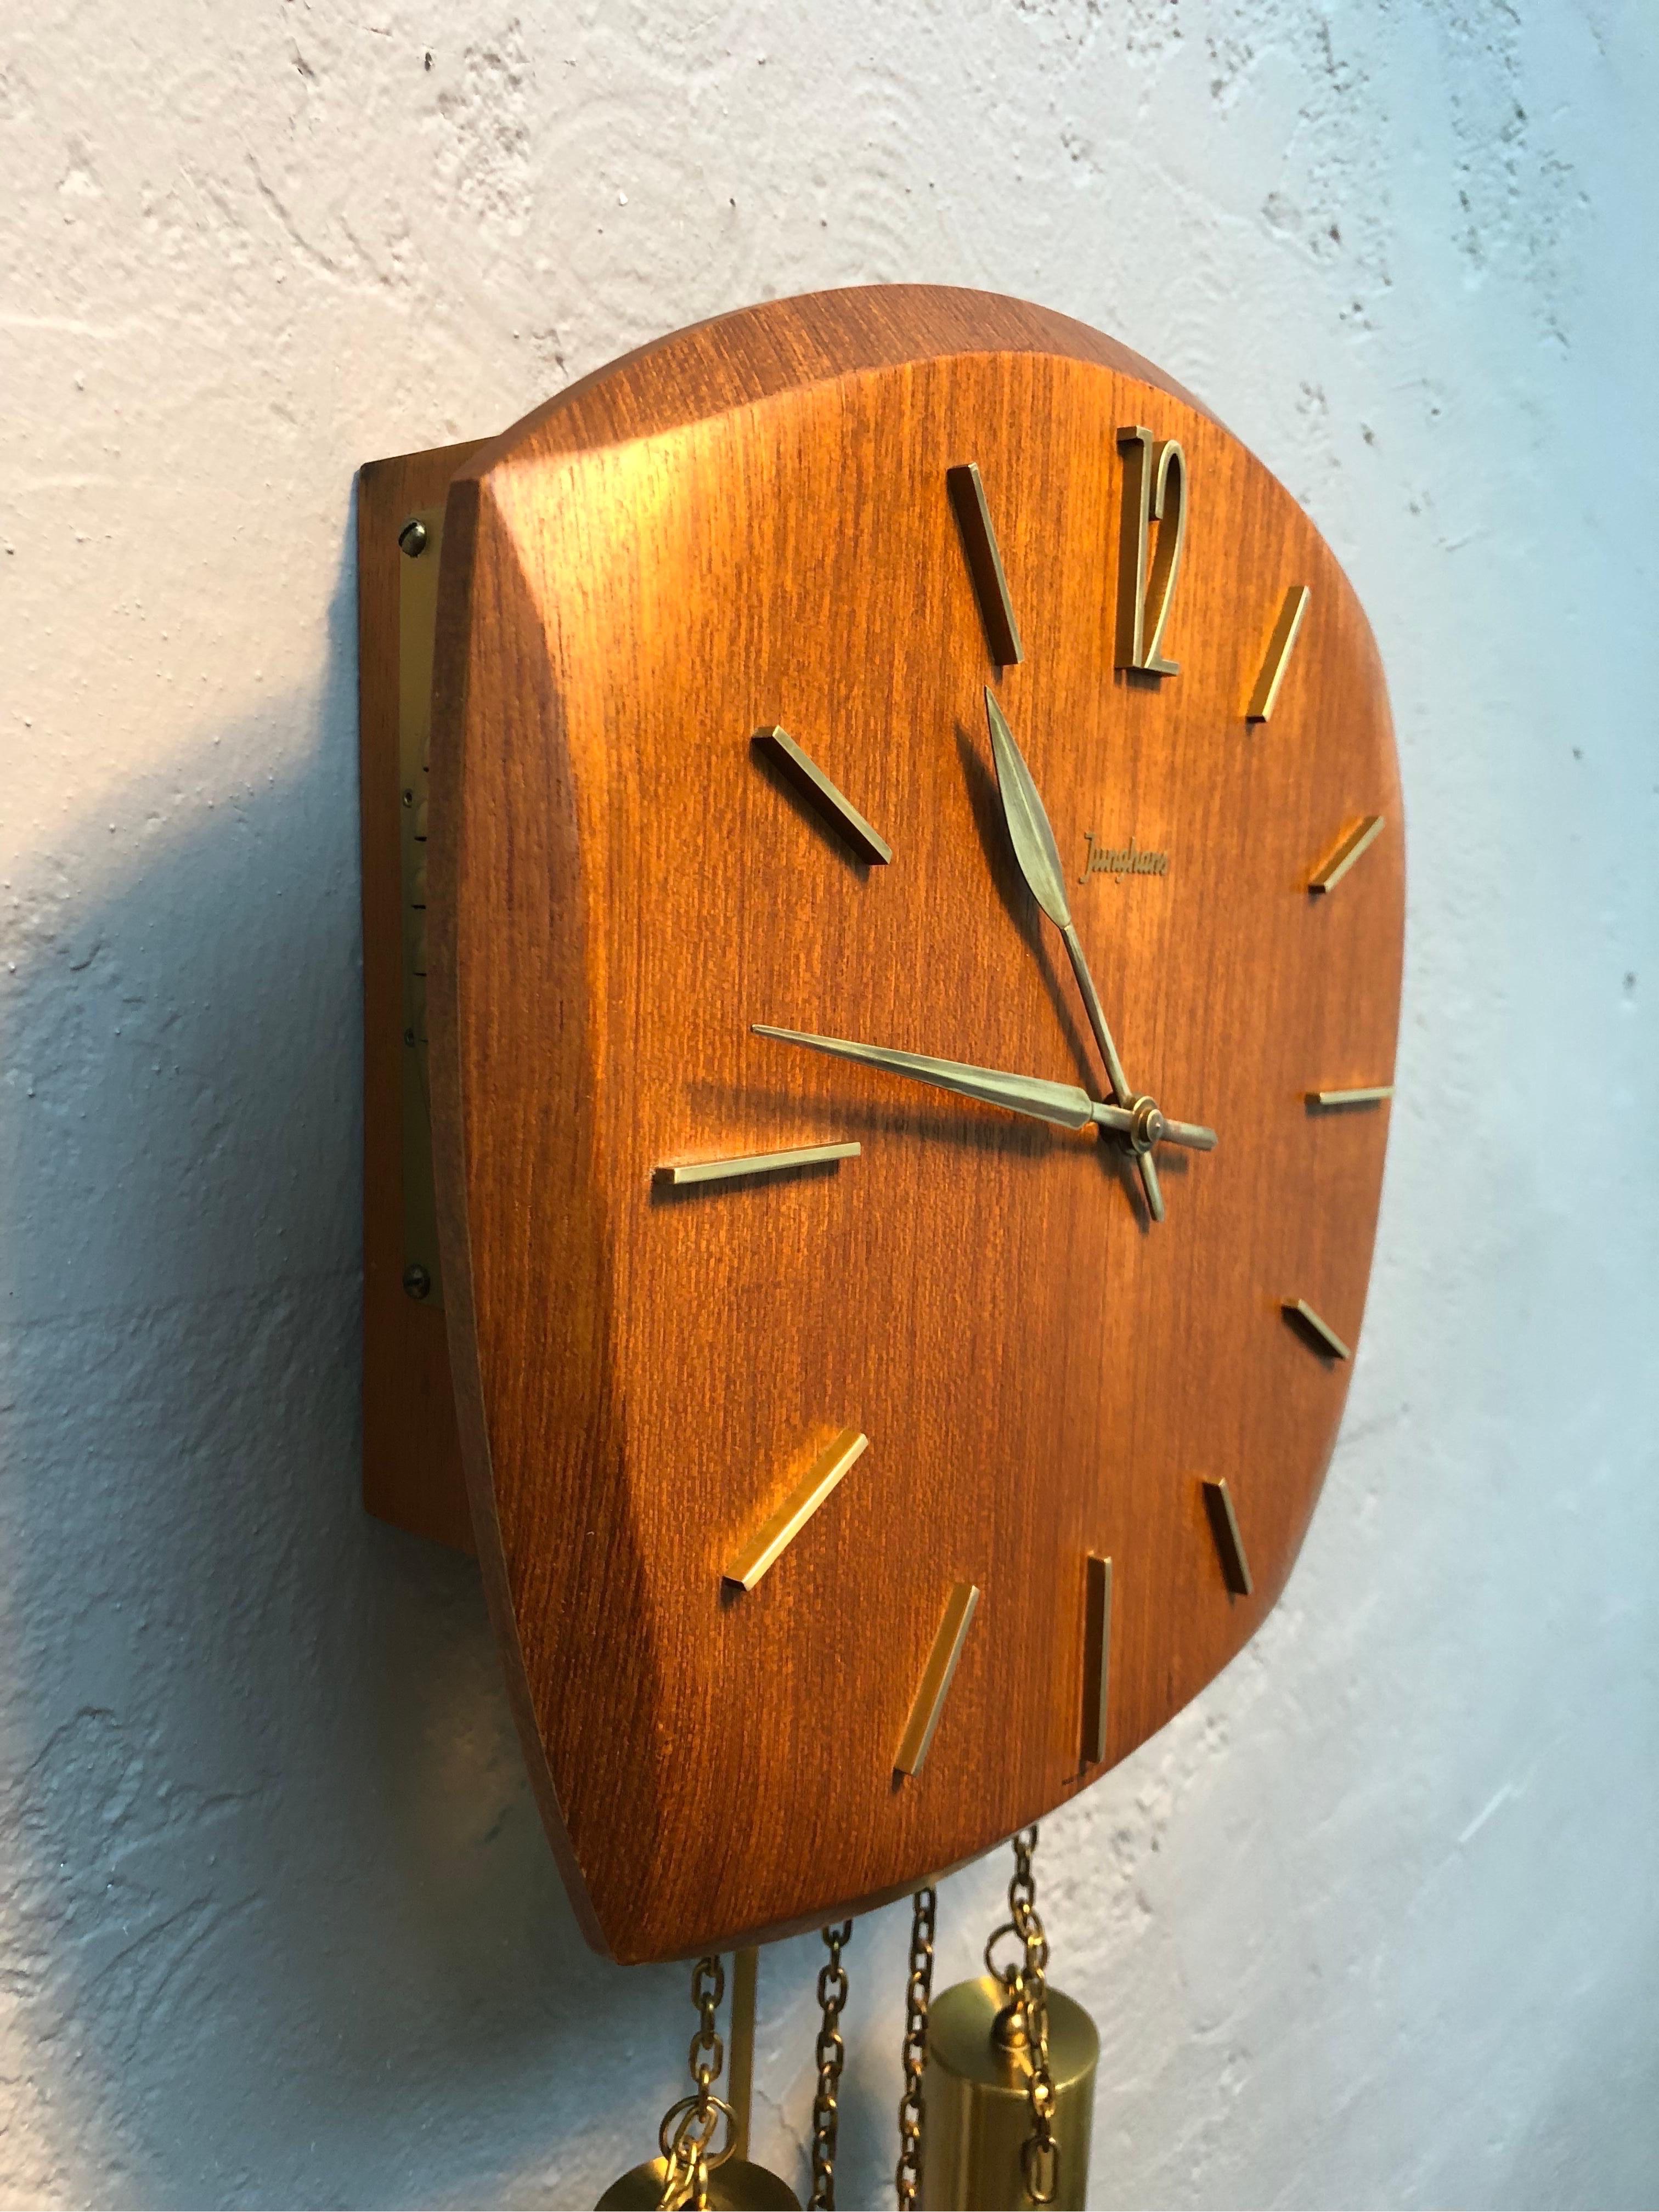 German Vintage Junghans Pendulum Wall Clock in Teak Veneer from the 1960s